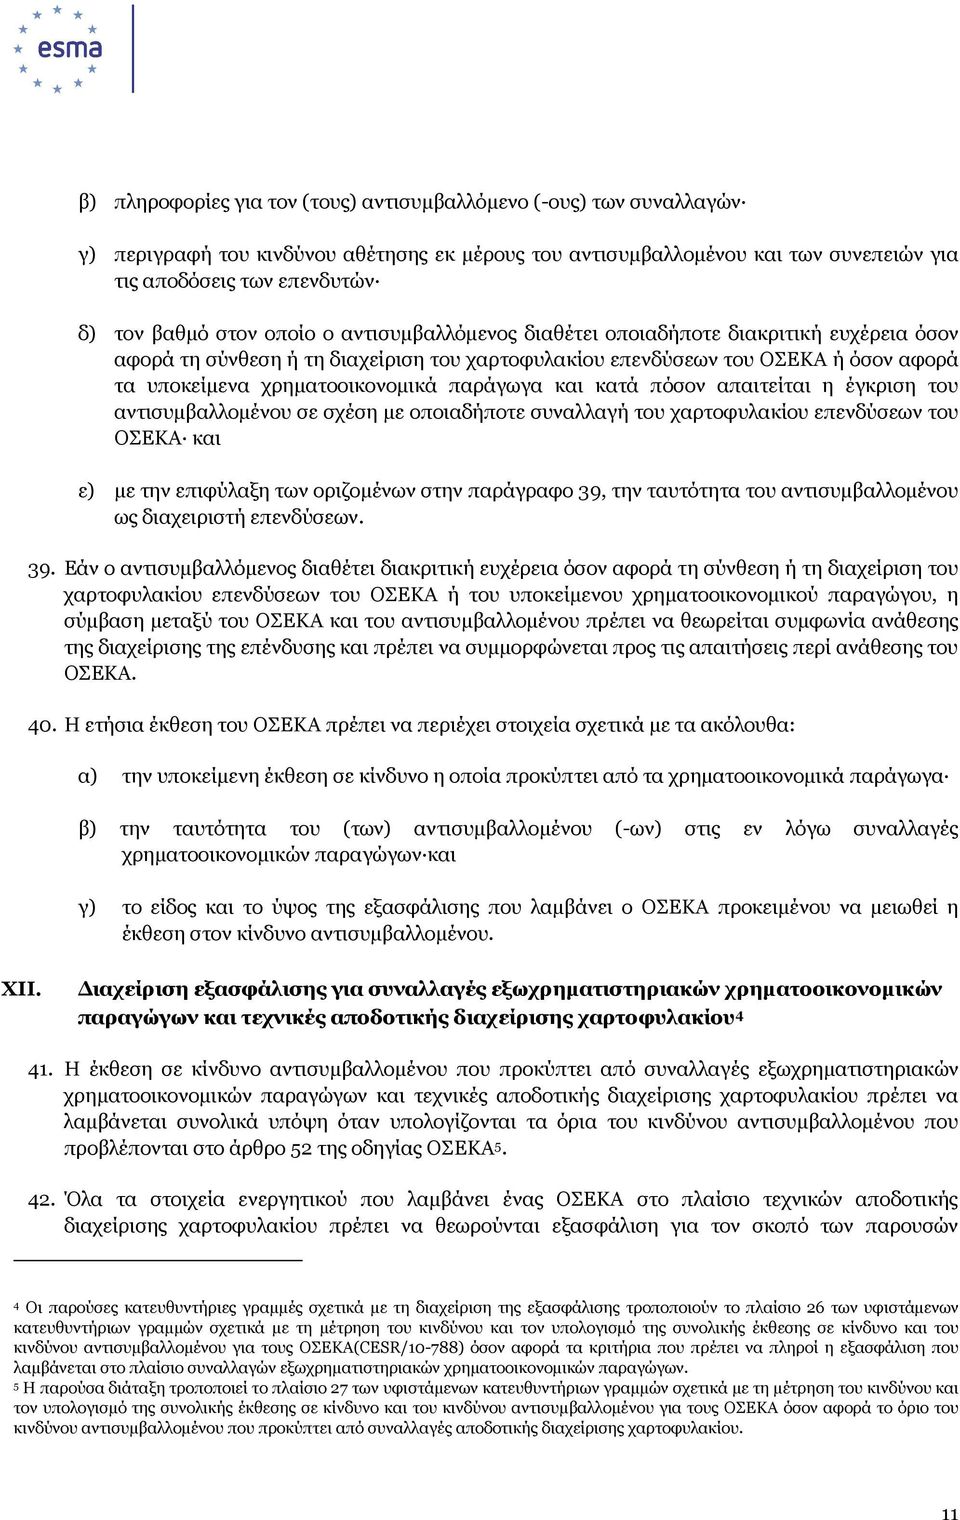 παράγωγα και κατά πόσον απαιτείται η έγκριση του αντισυµβαλλοµένου σε σχέση µε οποιαδήποτε συναλλαγή του χαρτοφυλακίου επενδύσεων του ΟΣΕΚΑ και ε) µε την επιφύλαξη των οριζοµένων στην παράγραφο 39,